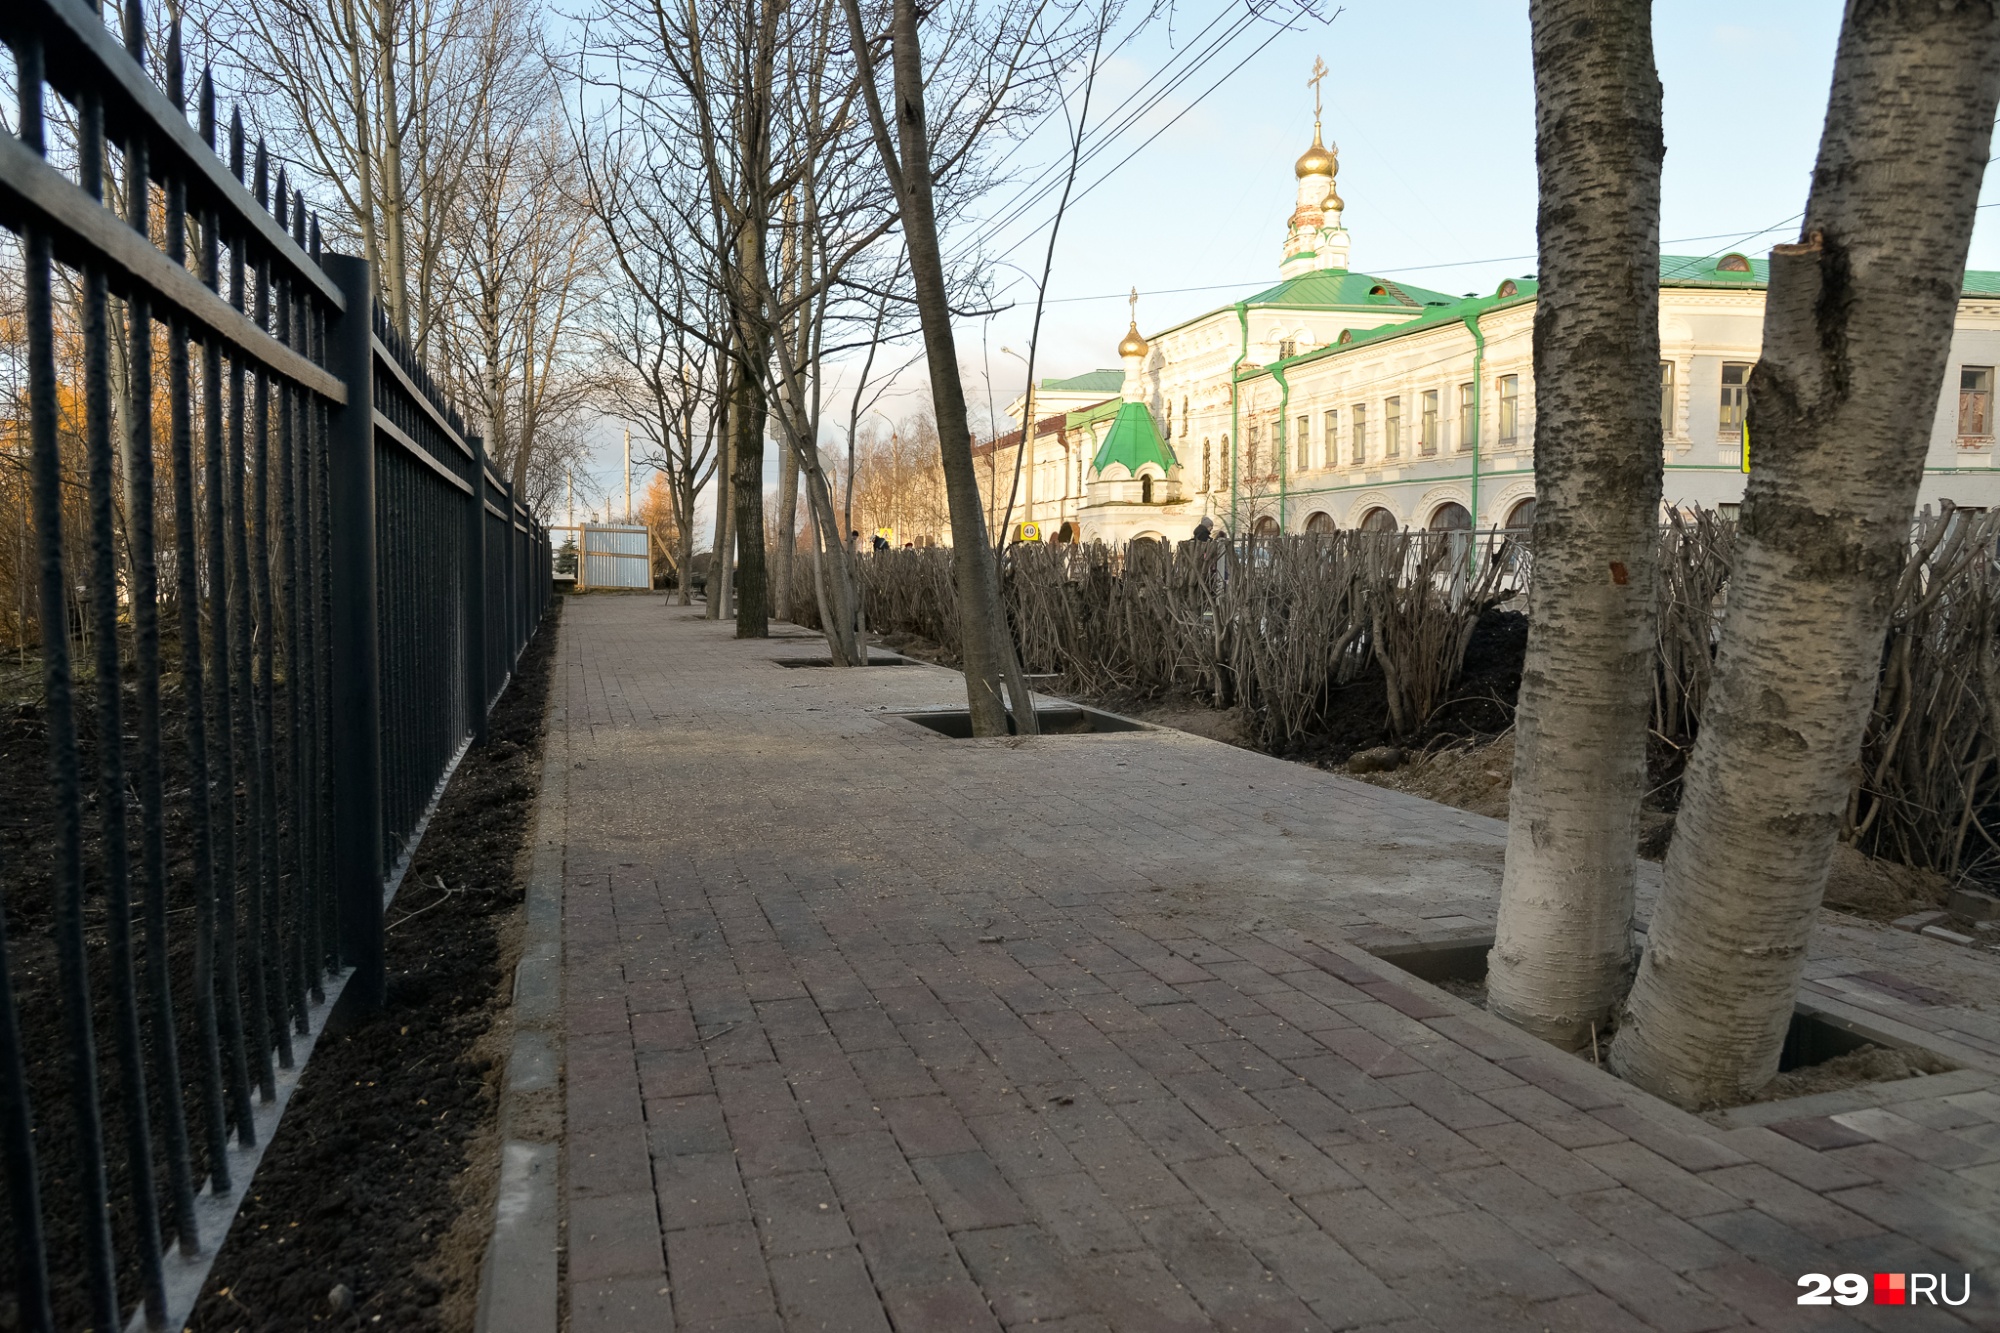 Архангельским активистам обещали, что деревья при благоустройстве не пострадают